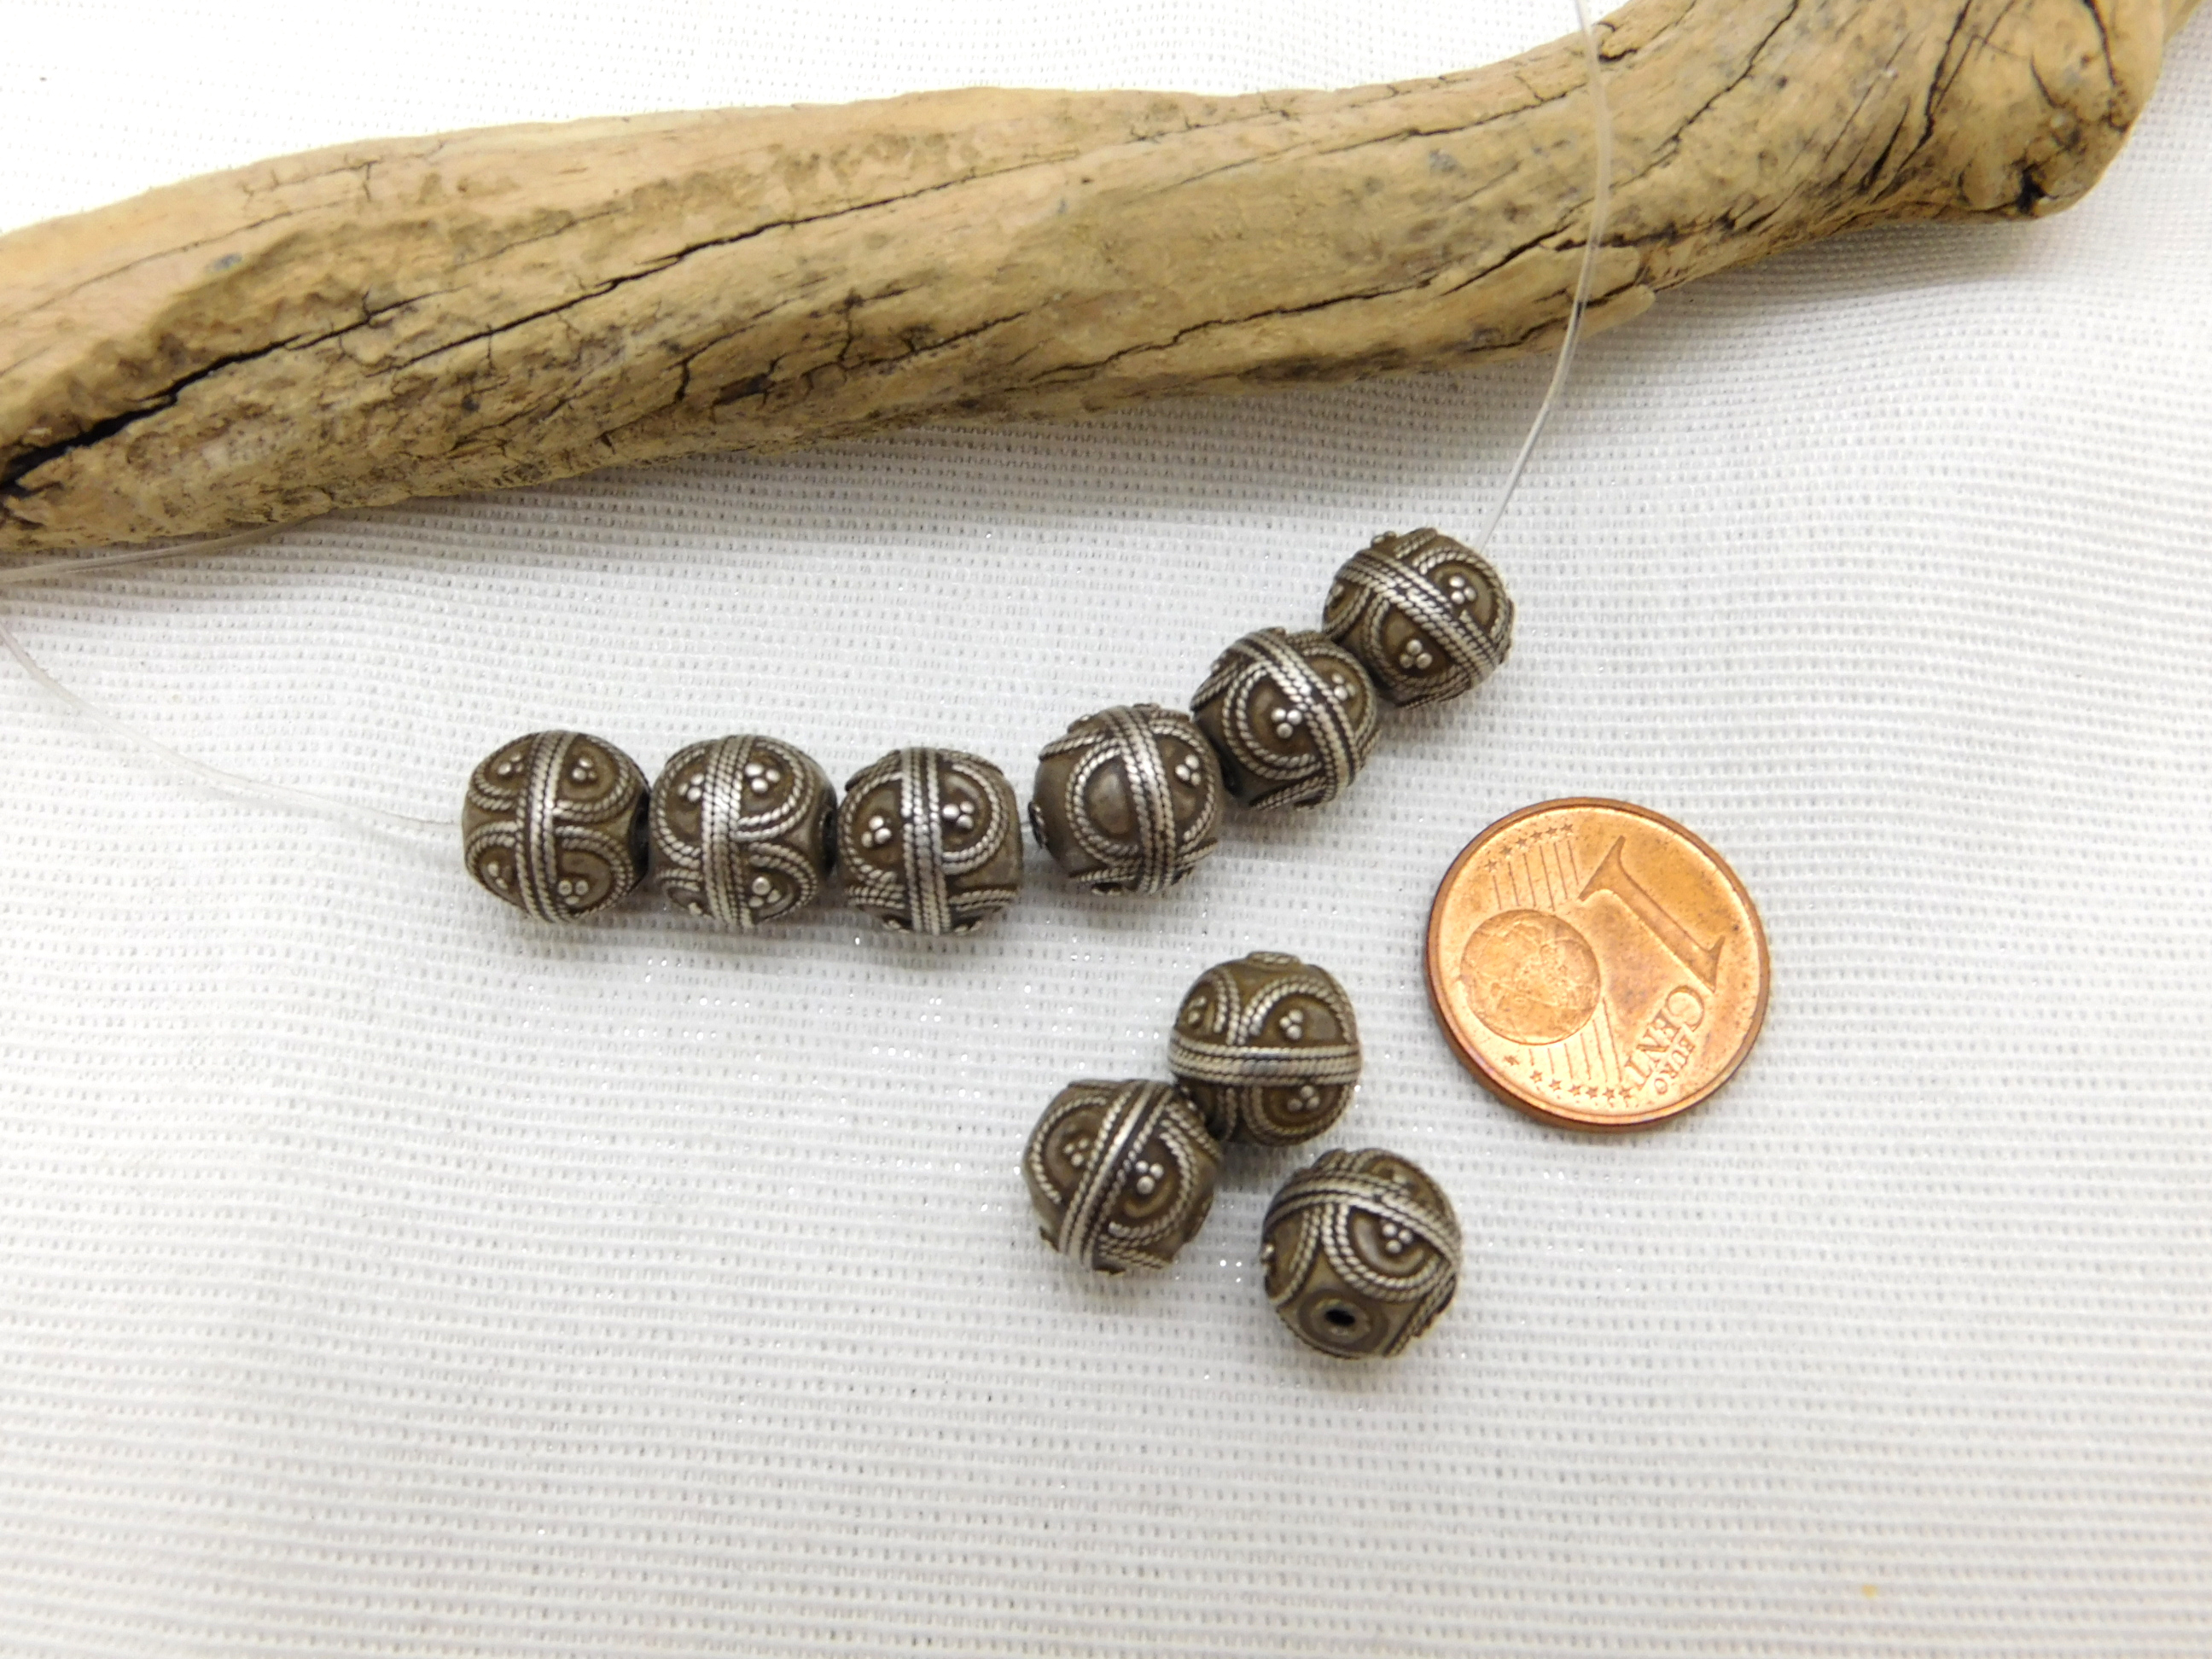 schöne alte granulierte Silber Perlen aus Mauretanien